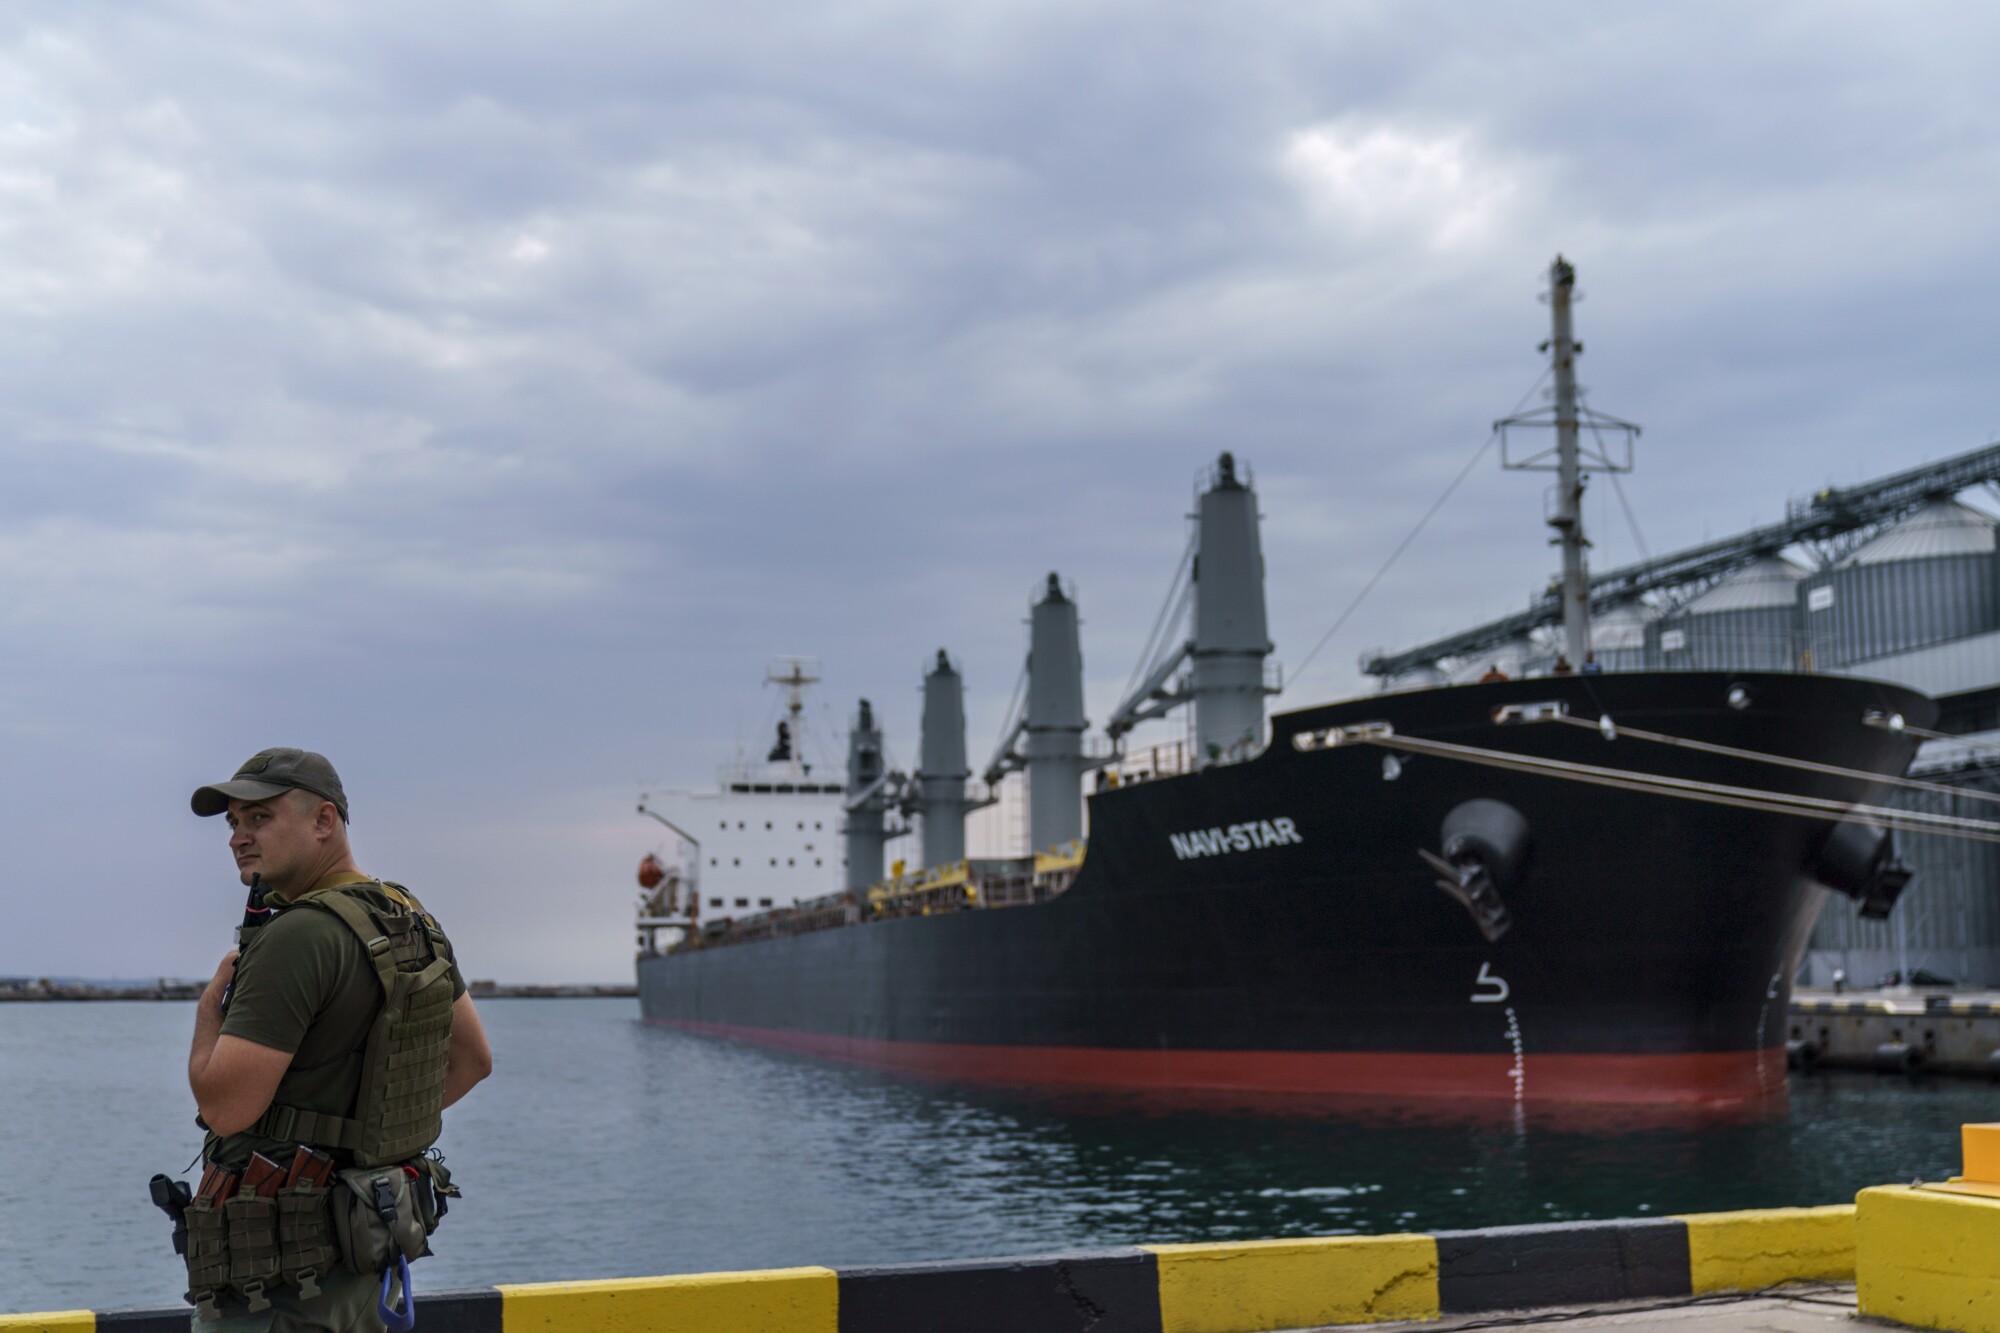 Limanda bir geminin yanında bir güvenlik görevlisi duruyor.